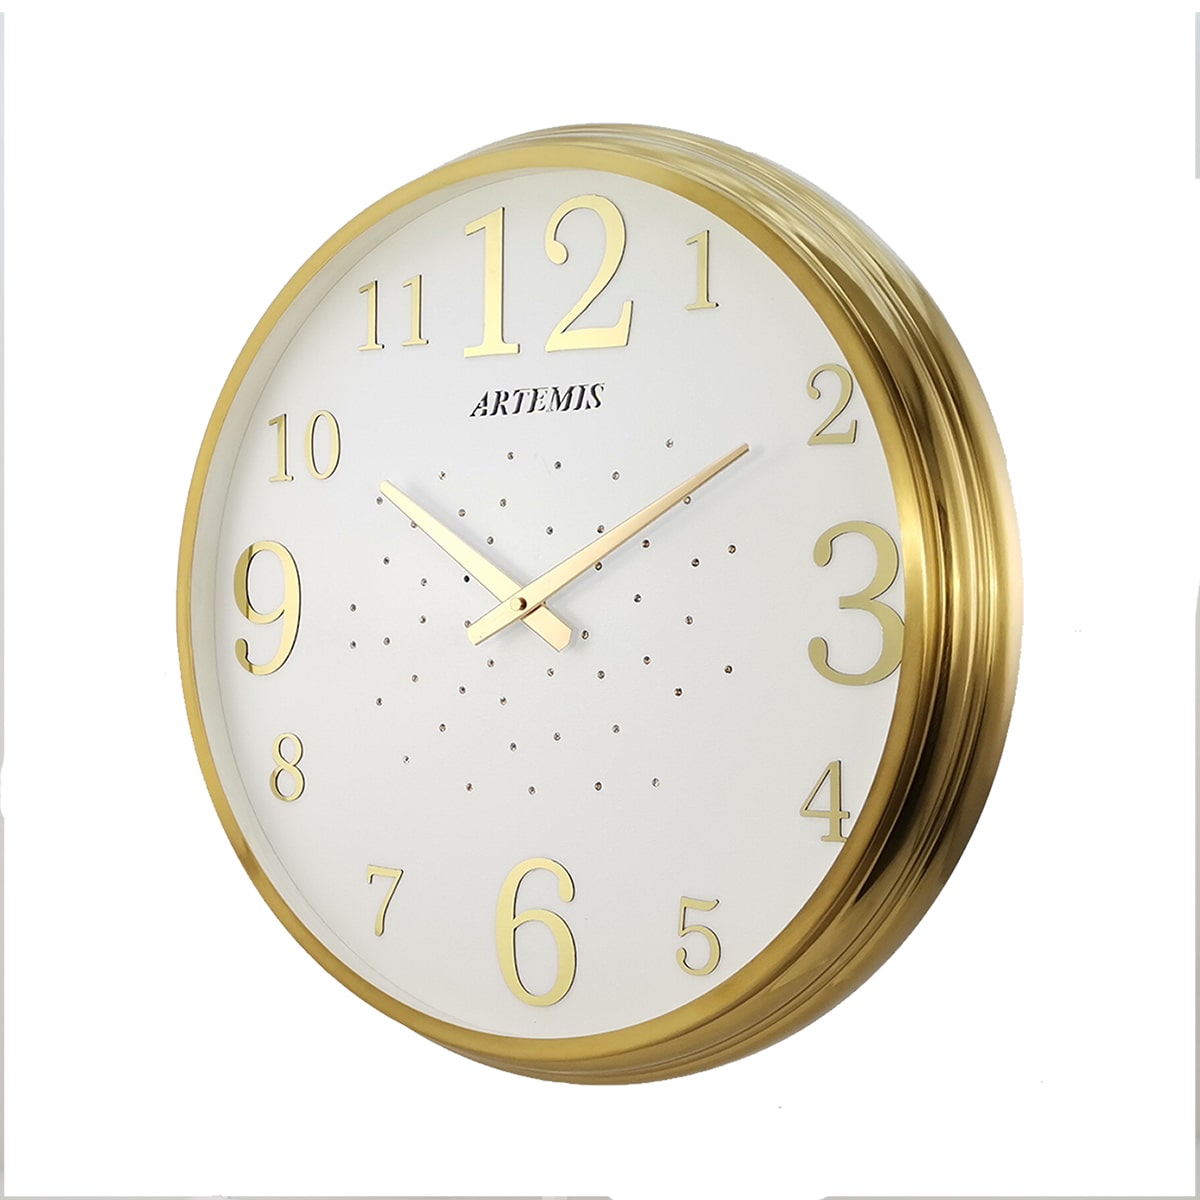 ساعت دیواری آرتمیس مدل 2000 گلد (طلایی) صفحه سفید0